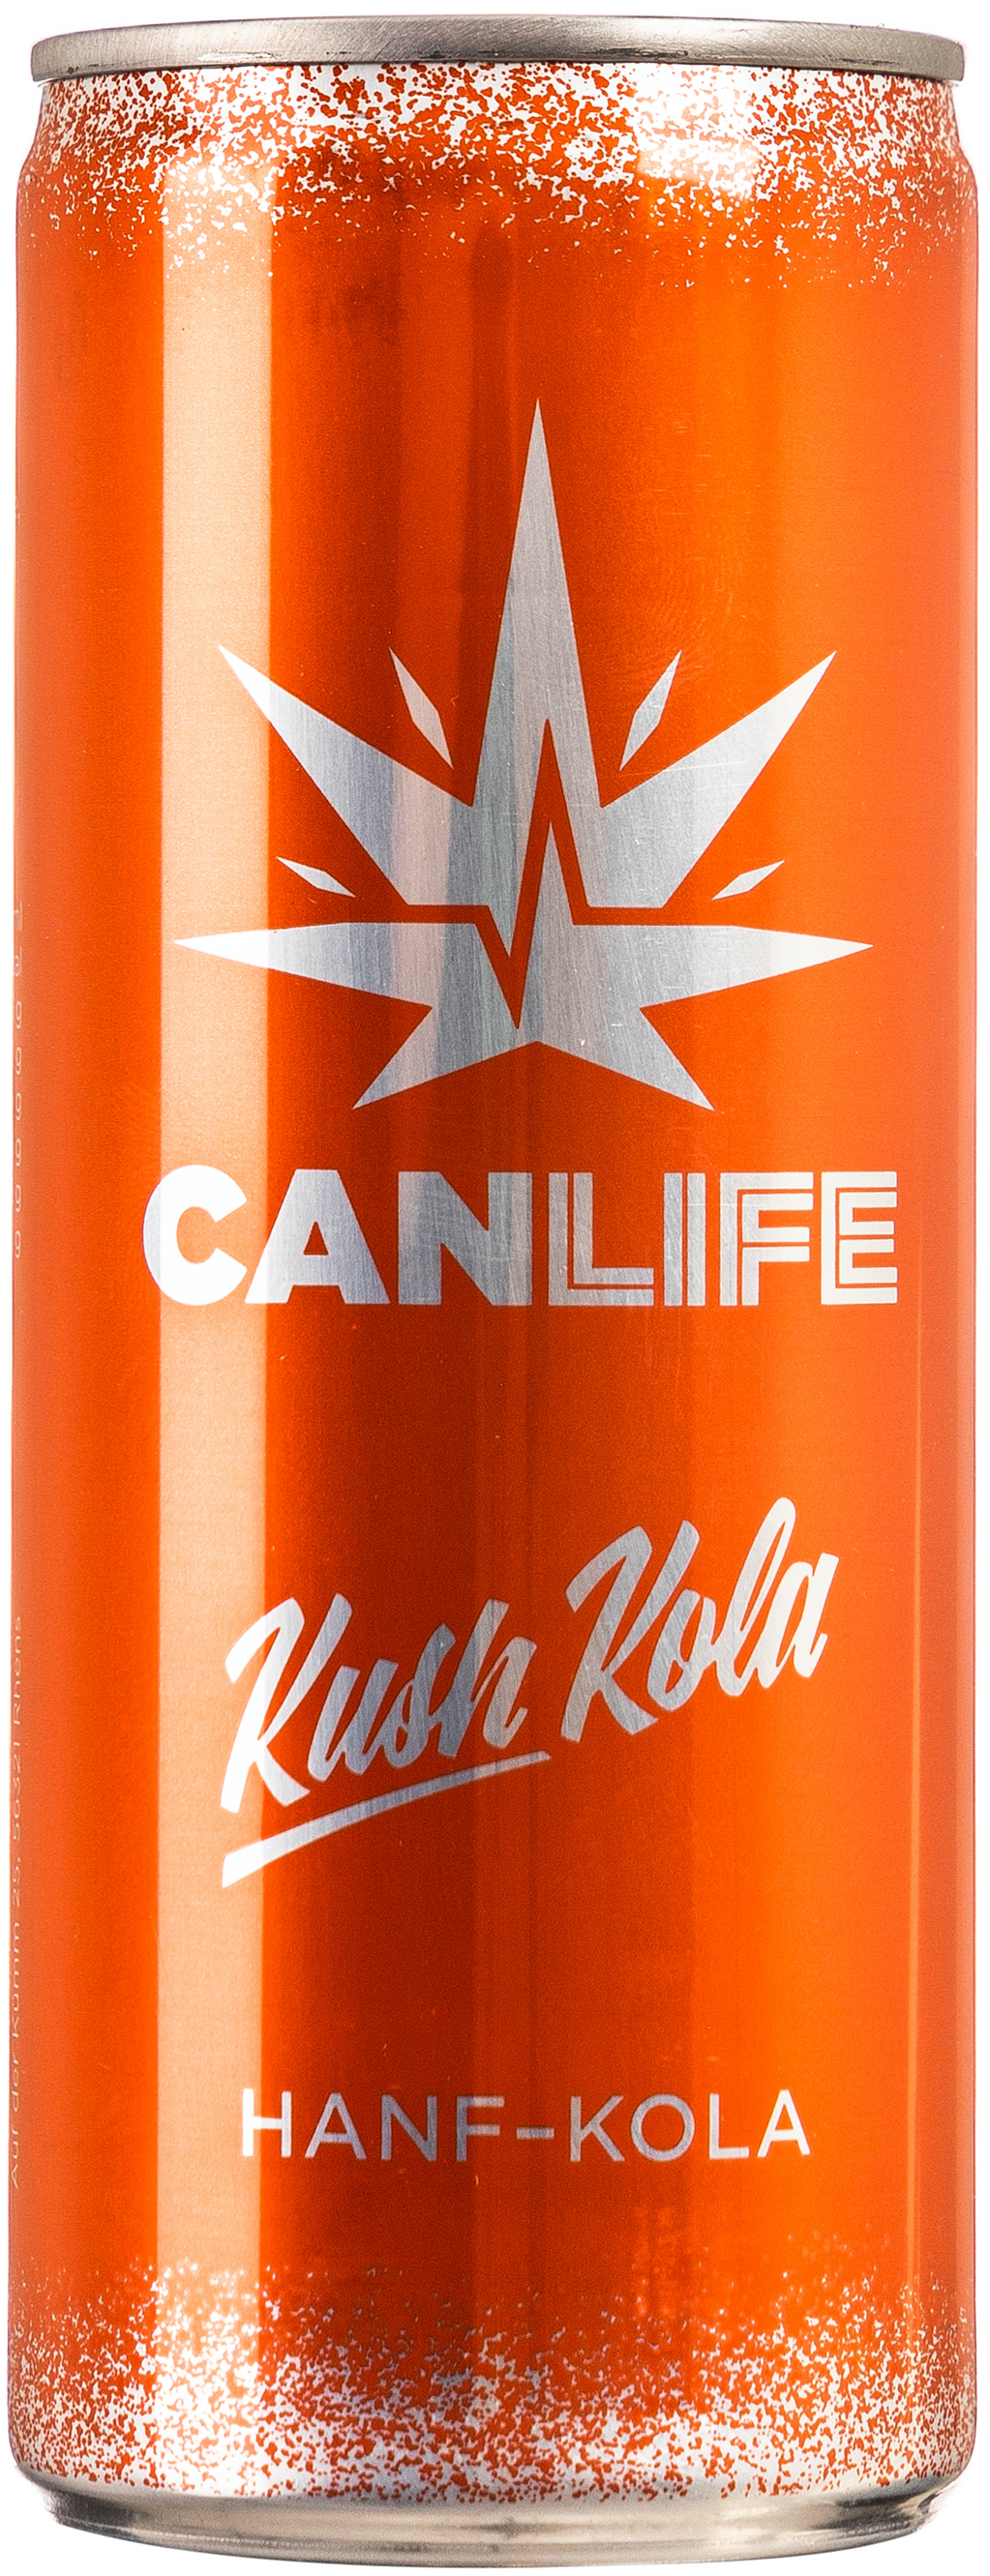 CanLife Kush Kola 0,250L EINWEG